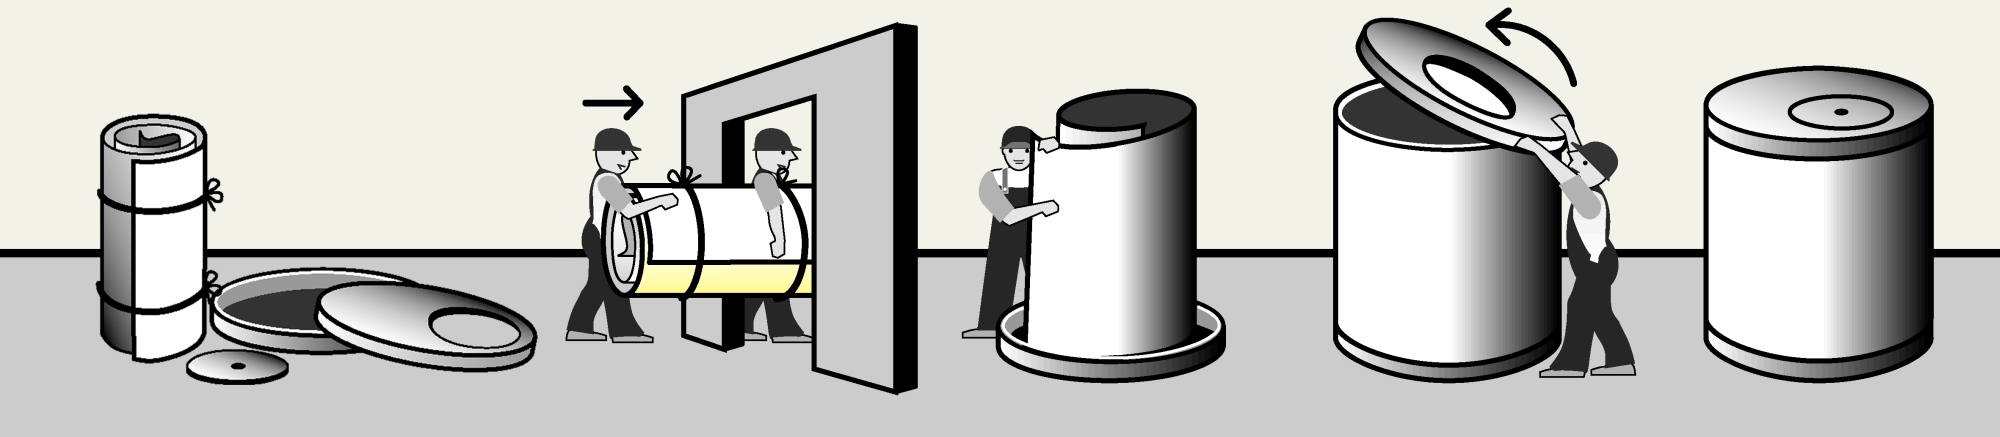 Schematischer Aufbau eines Heizöltanks von Haase, dargestellt in einem schwarz/weiß Comic: Links die Einzelteile des Tanks, im Anschluss werden sie von zwei Menschen durch die Tür getragen. Rechts dann der Zusammenbau des Tanks im Kellerraum.